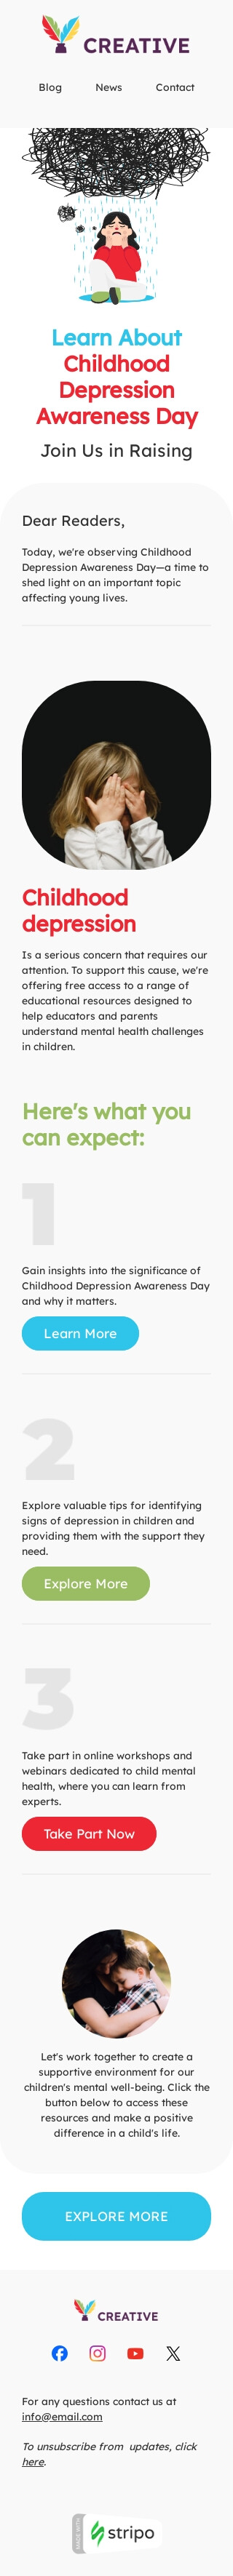 Tag der Aufklärung über Depressionen bei Kindern E-Mail-Vorlage «Depressionen in der Kindheit» für Publikationen und Blogs-Branche Ansicht auf Mobilgeräten